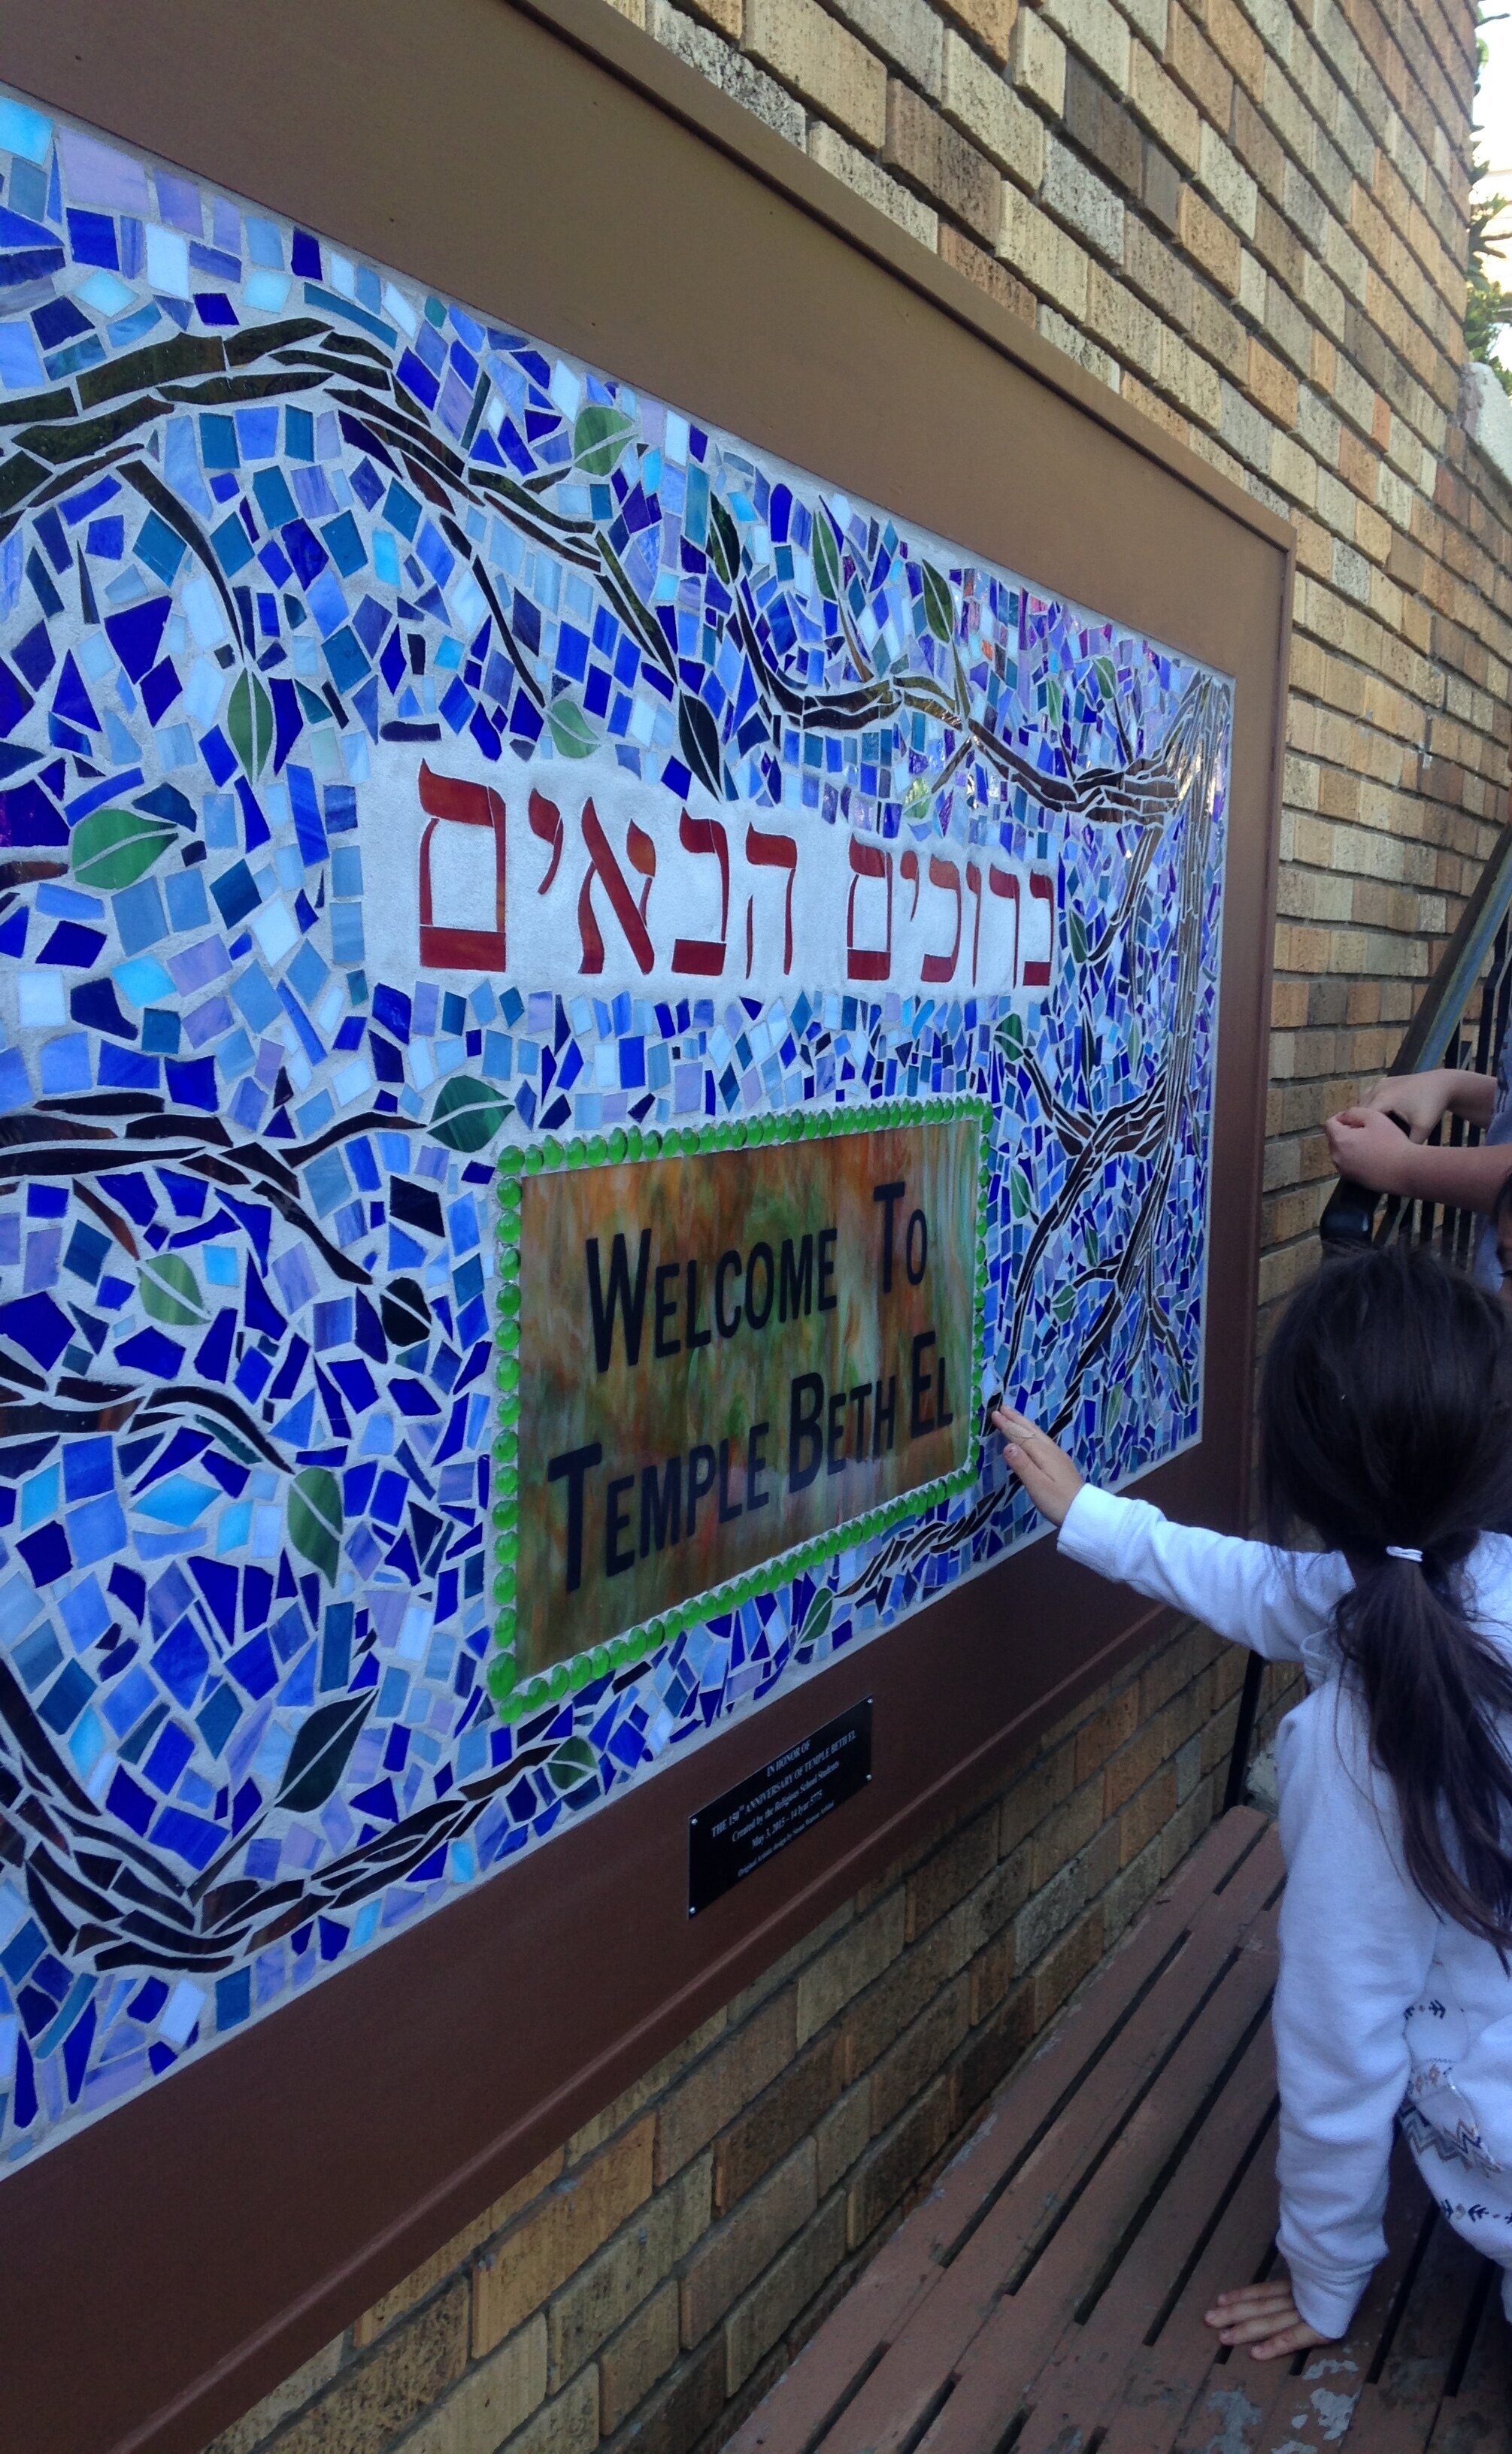 Mosaic project @ Temple Beth El